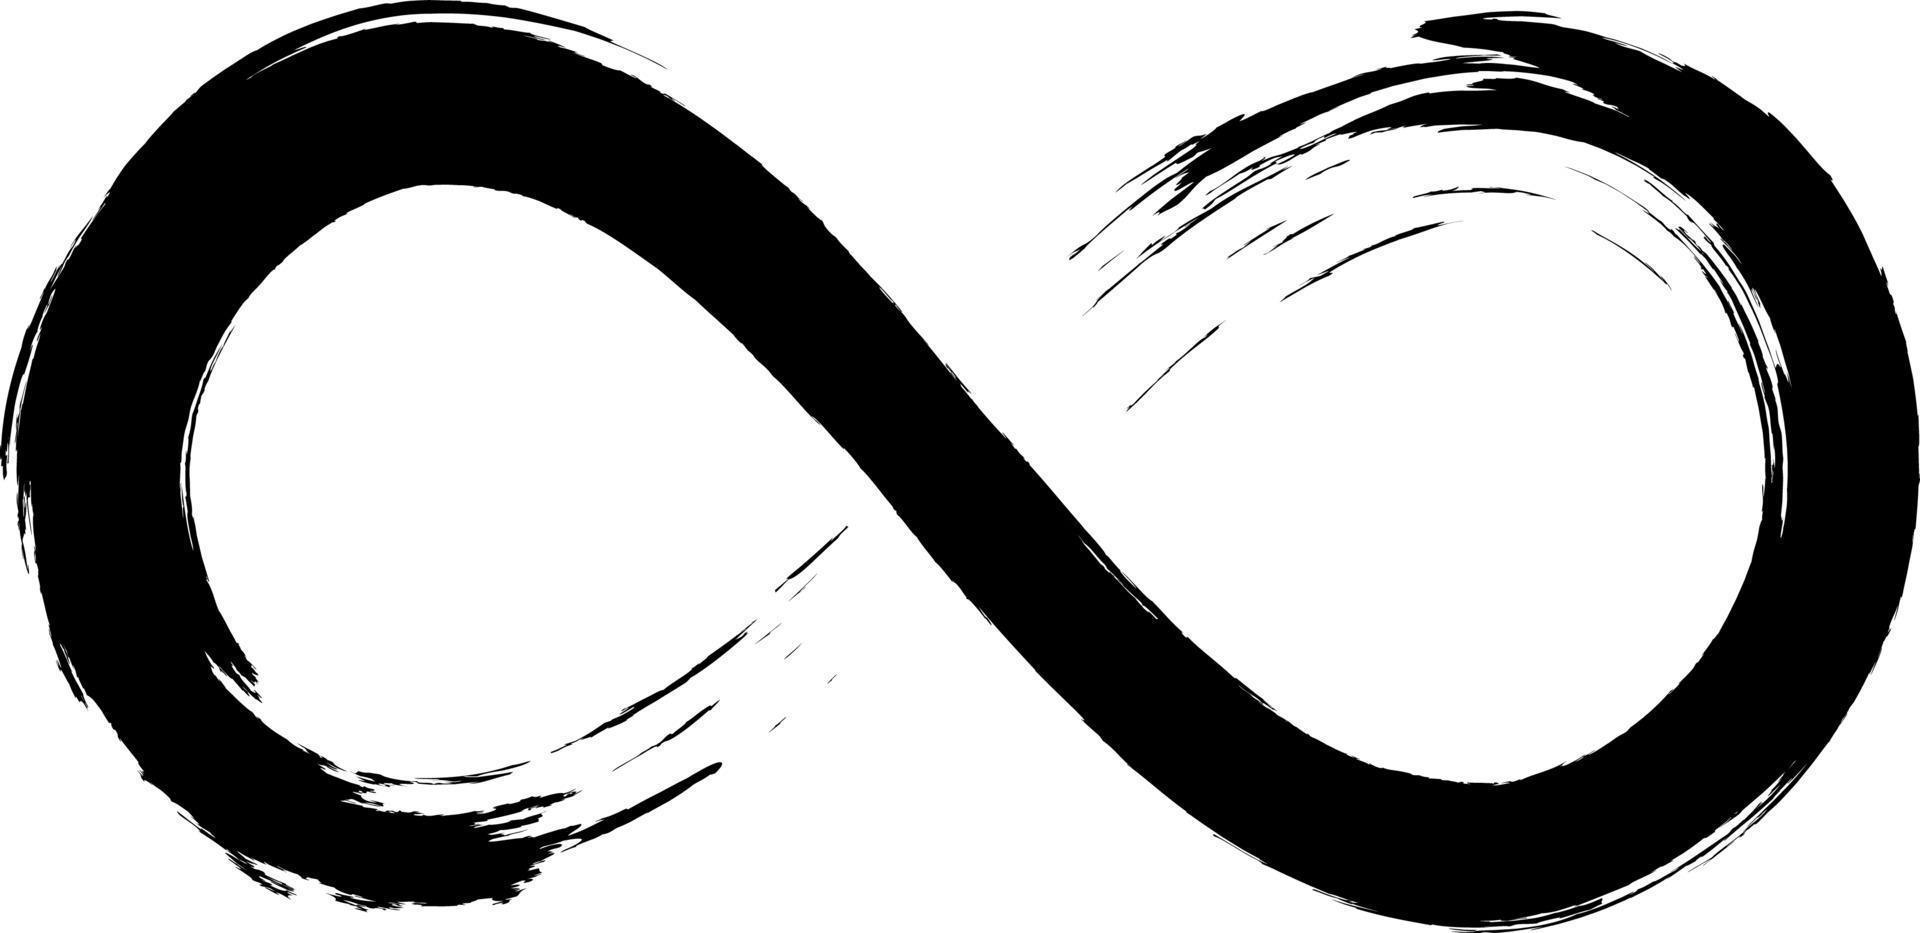 grunge oändlighetssymbol. handmålad med svart färg. grunge penseldrag. modern evighet ikon. grafisk designelement. oändliga möjligheter, oändlig process. vektor